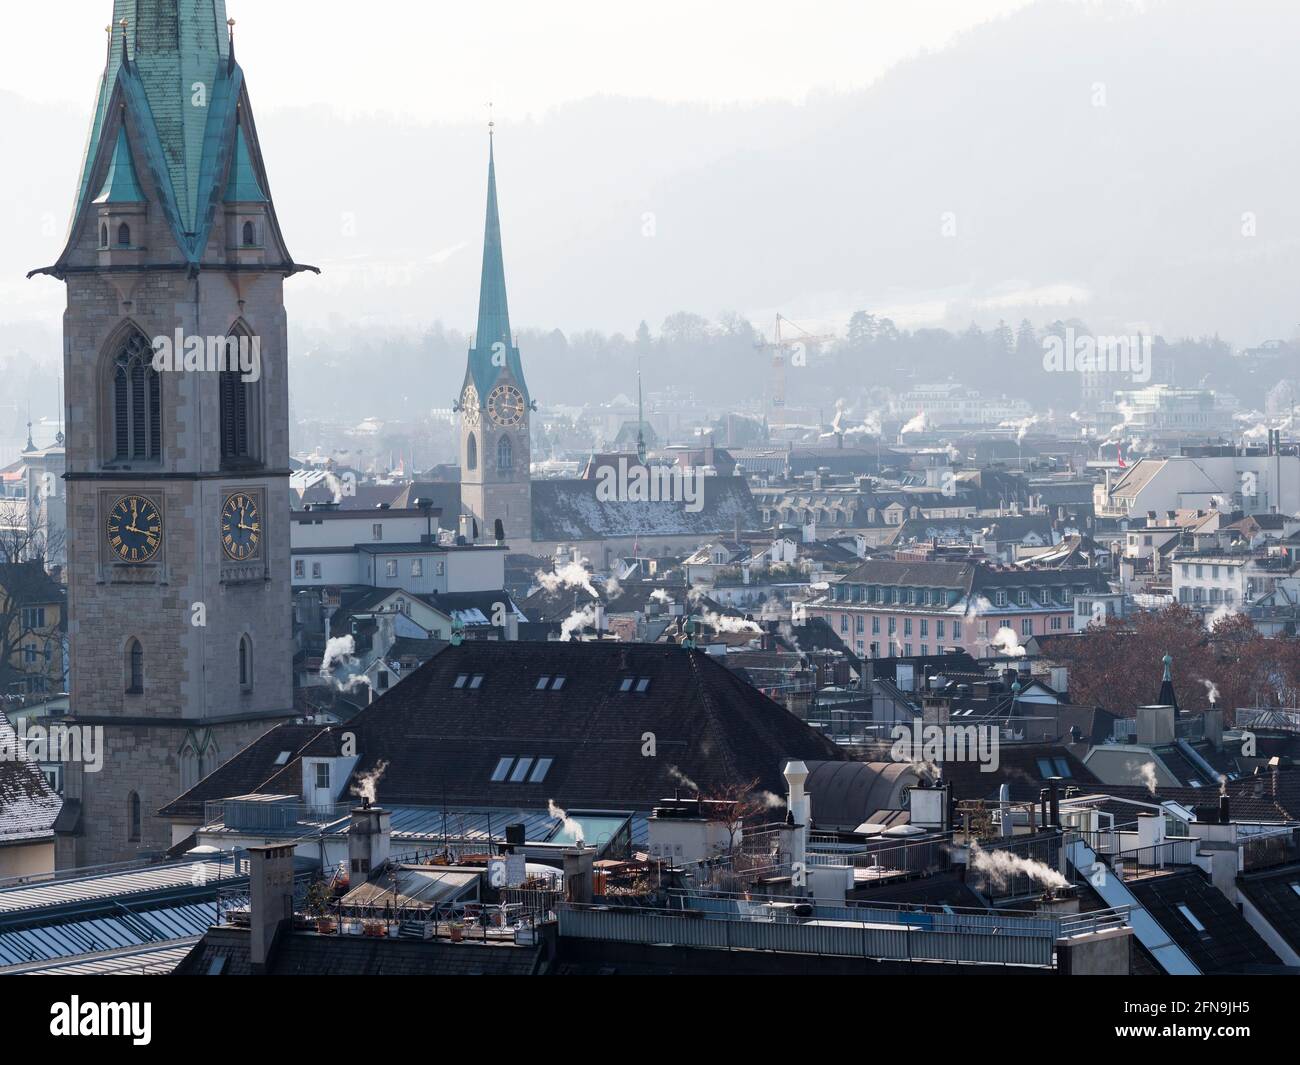 Découvrez le panorama de la vieille ville de Zurich, en Suisse. Banque D'Images